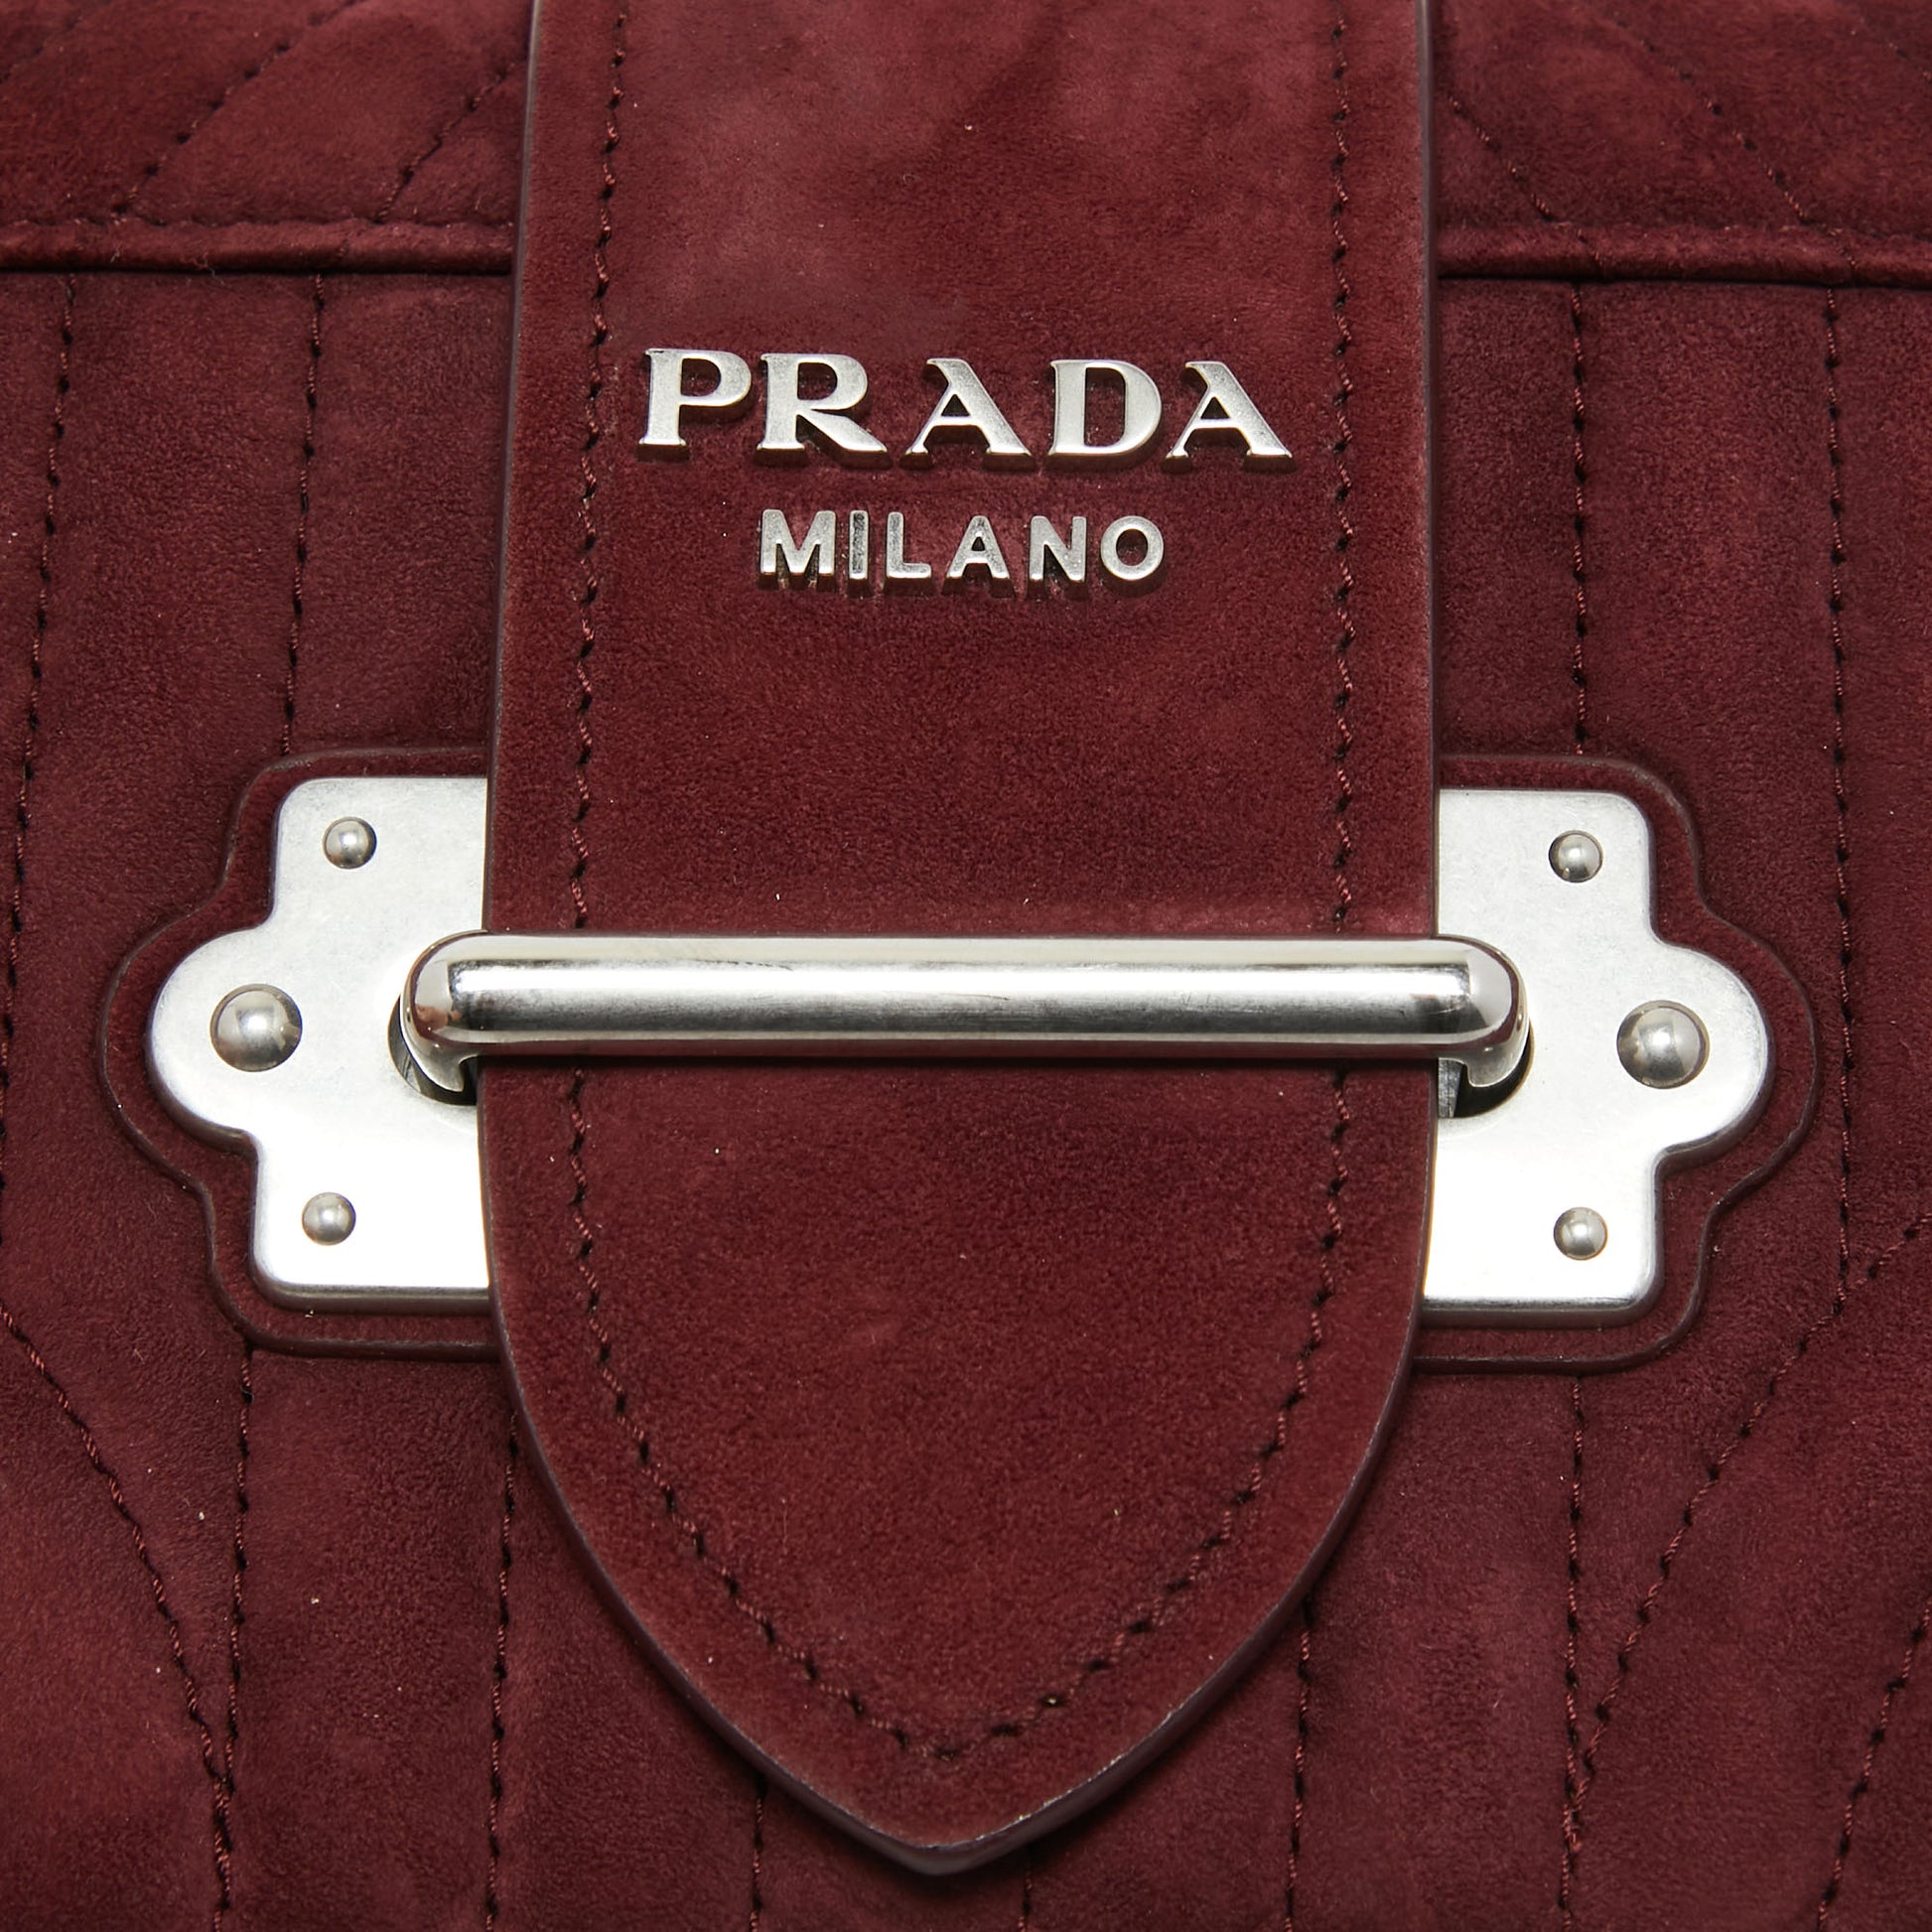 Prada Authenticated Cahier Leather Handbag